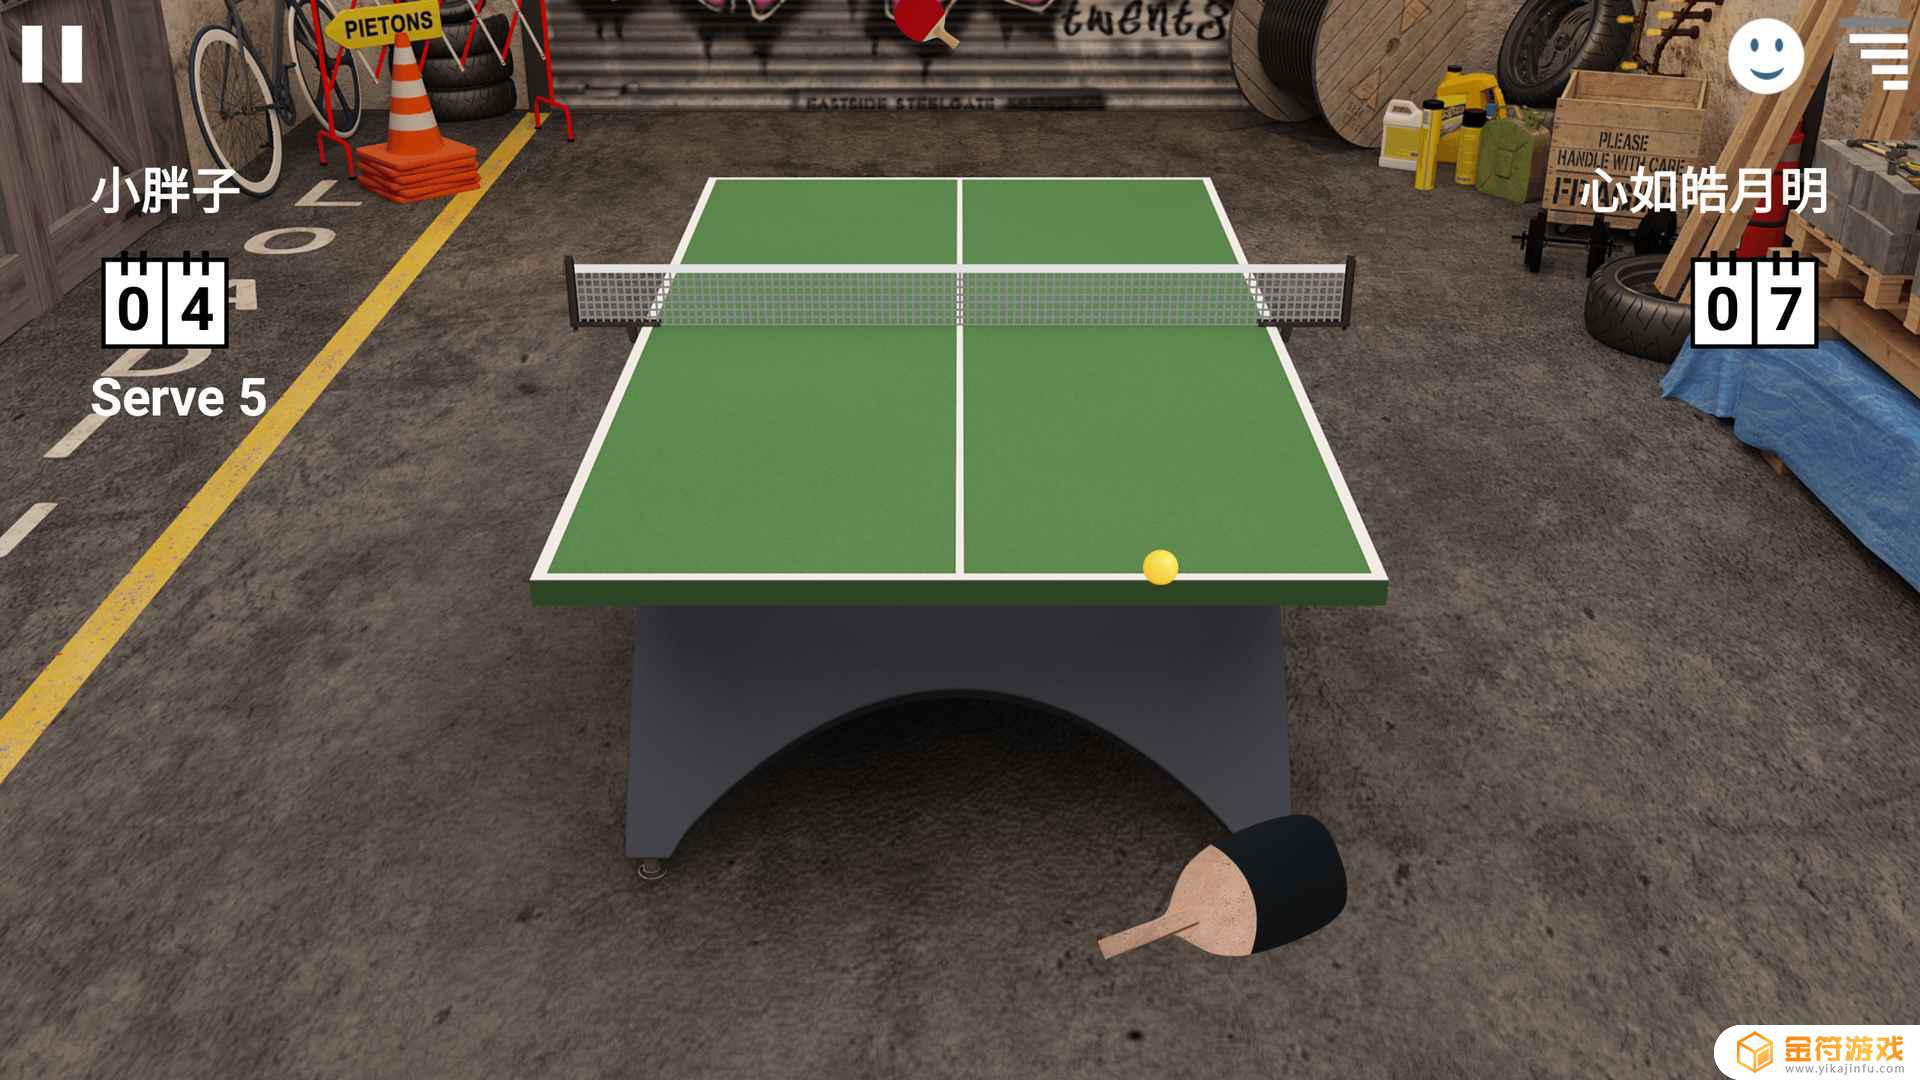 虚拟乒乓球安卓版下载